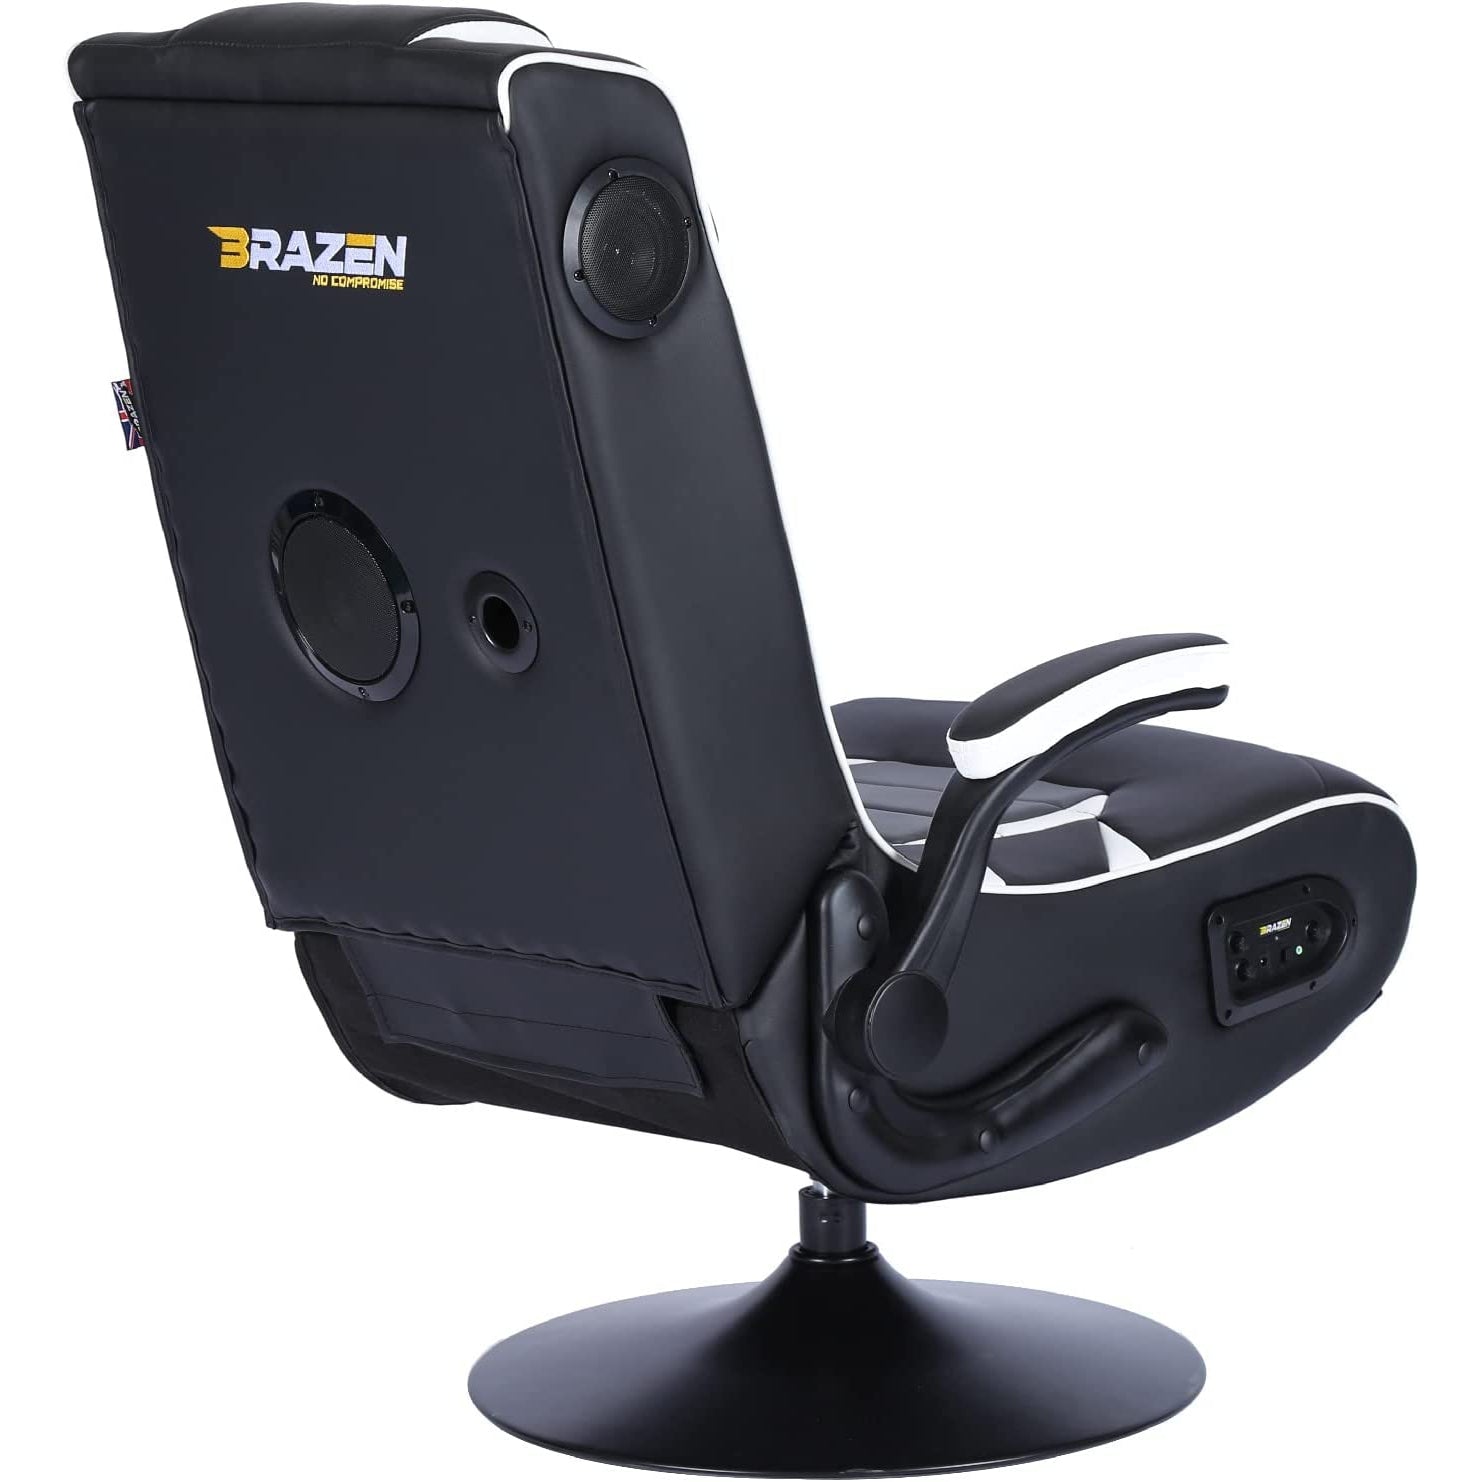 BraZen Panther Elite 2.1 Bluetooth Surround Sound Gaming Chair - Black / White - Refurbished Pristine